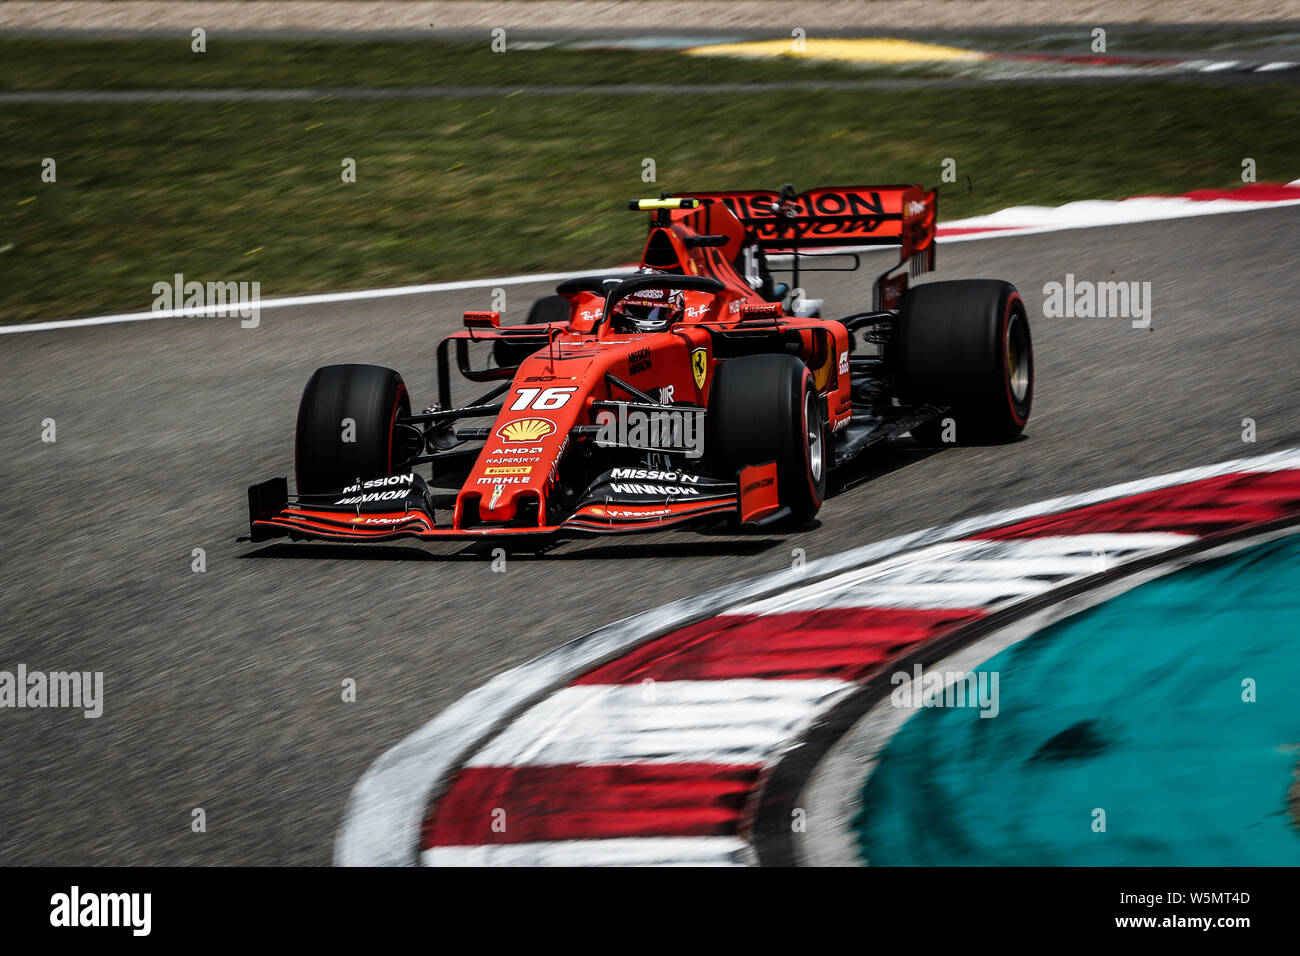 Pilote automobile monégasque Charles Leclerc de la Scuderia Ferrari en compétition au cours de la séance de qualifications de la Formule 1 Grand Prix de Chine Heineken Banque D'Images